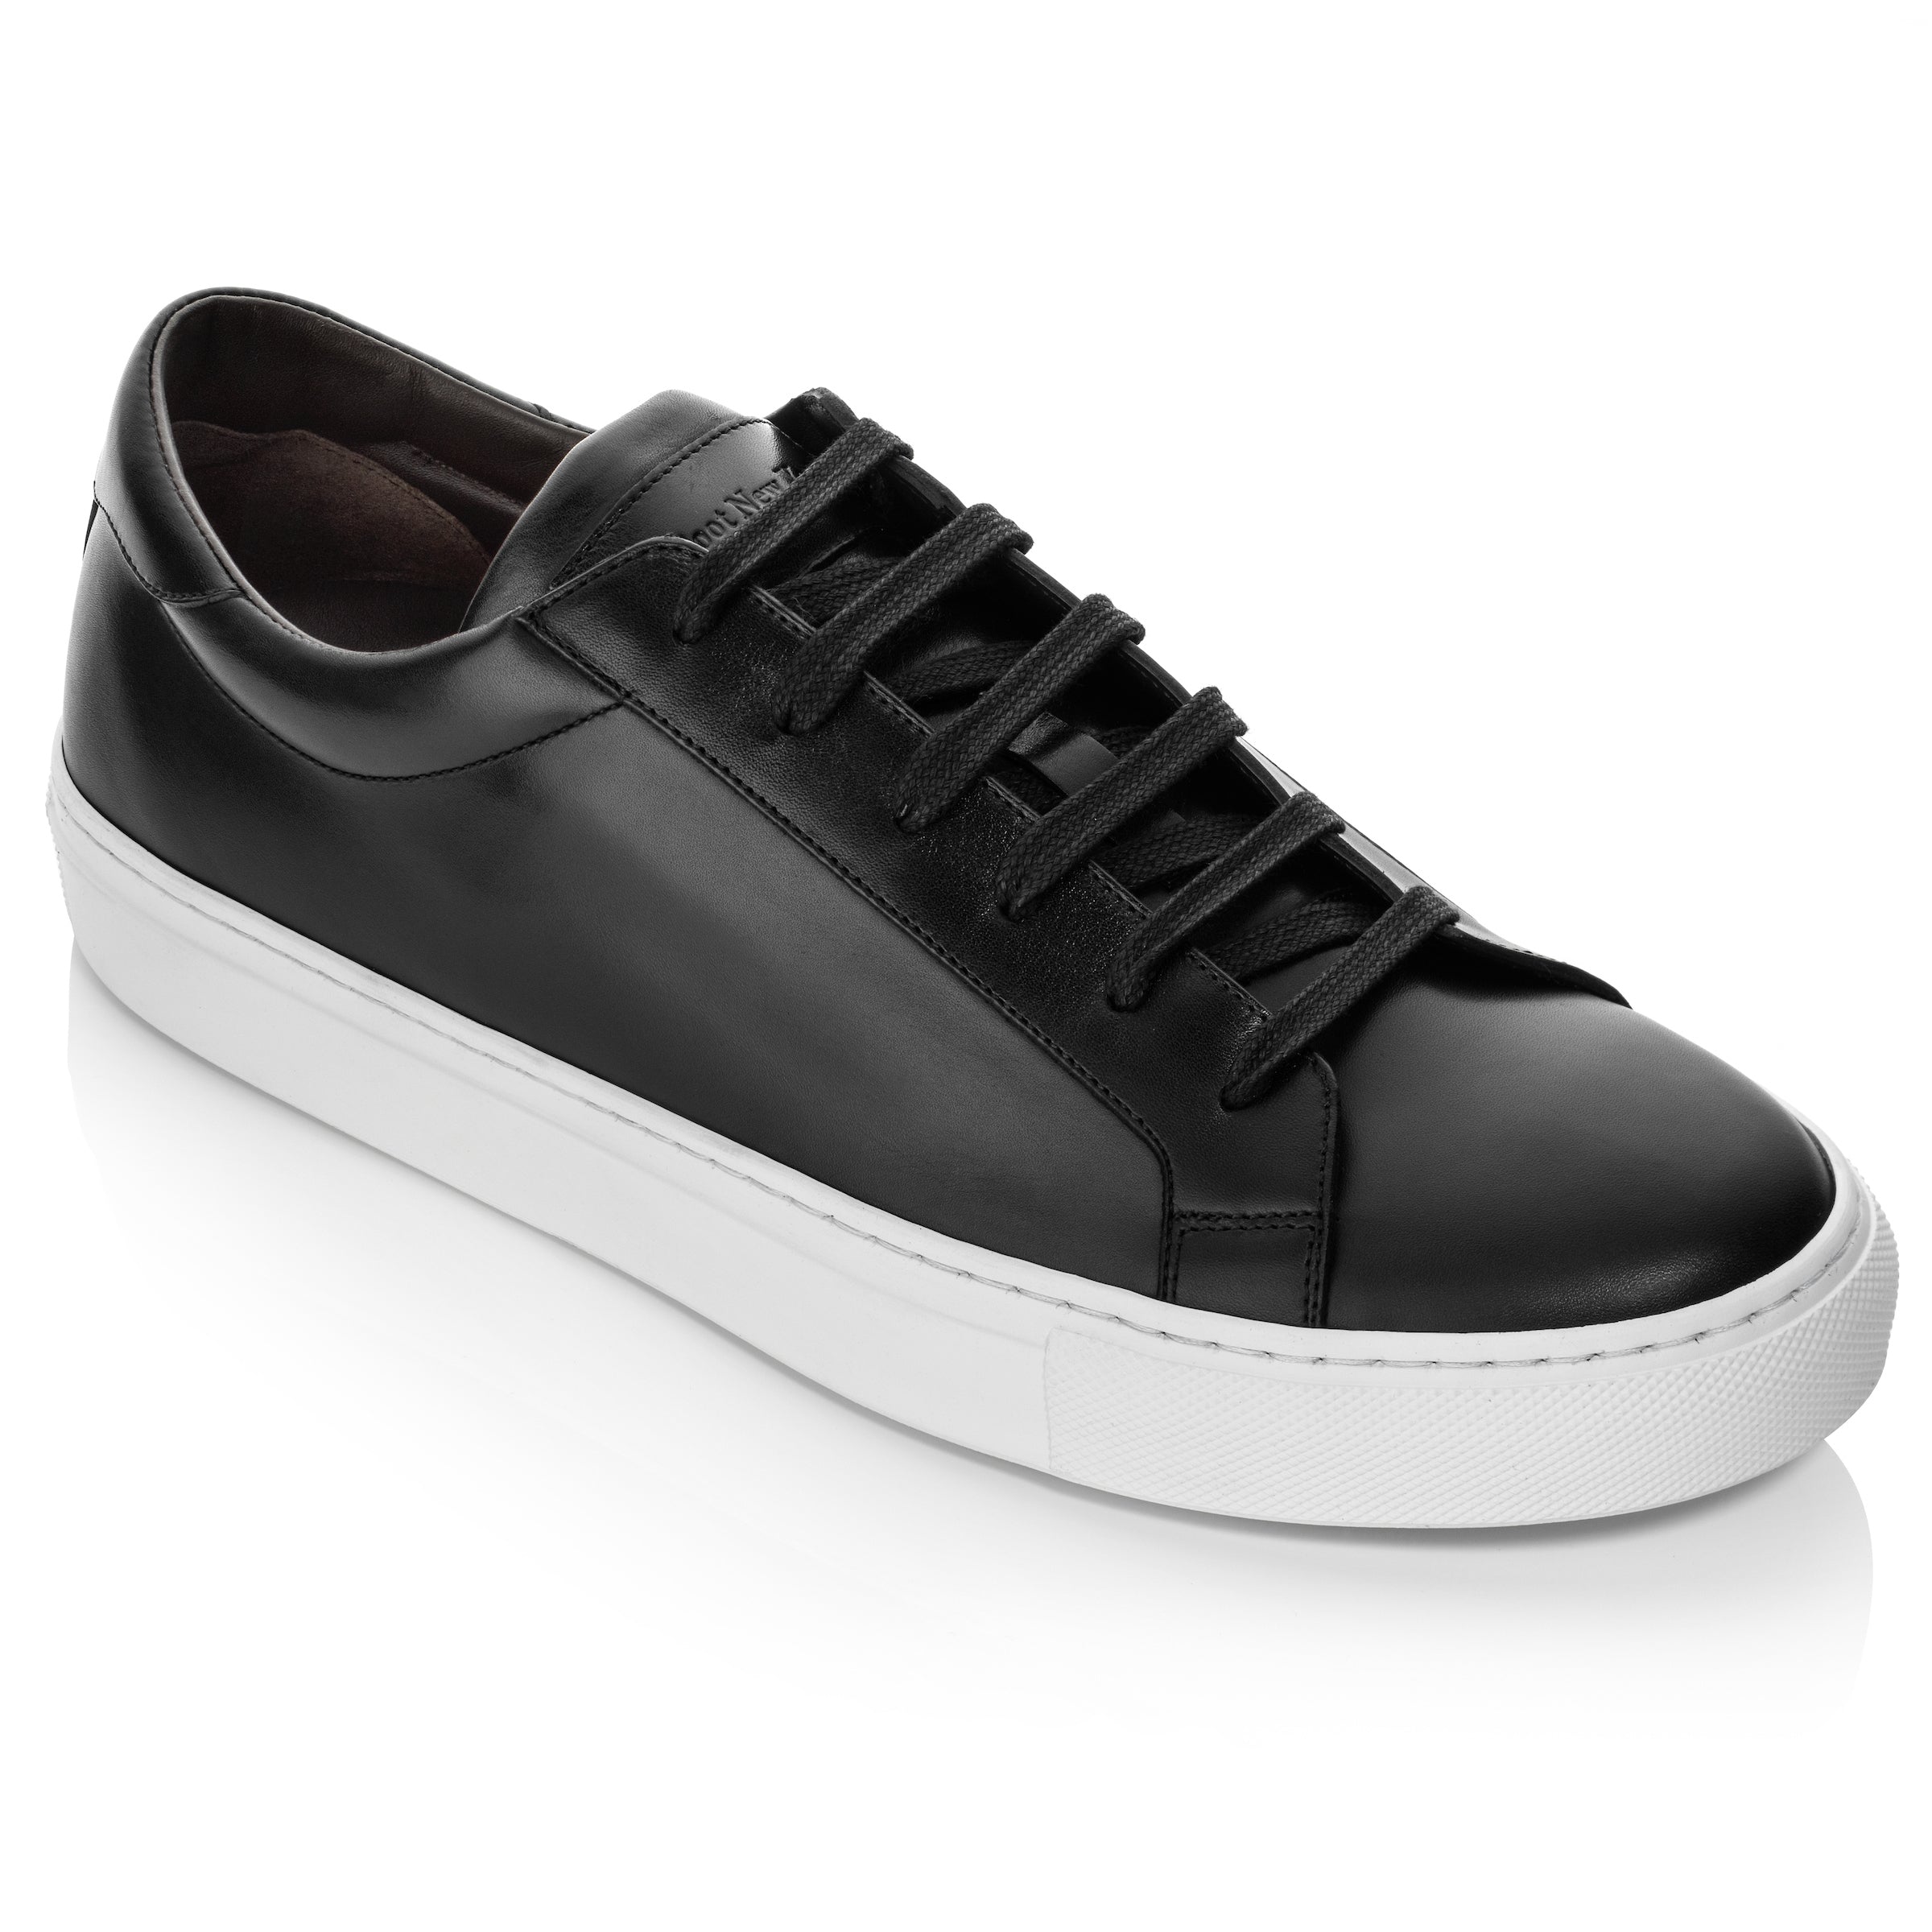 Sierra Black/White Sneaker